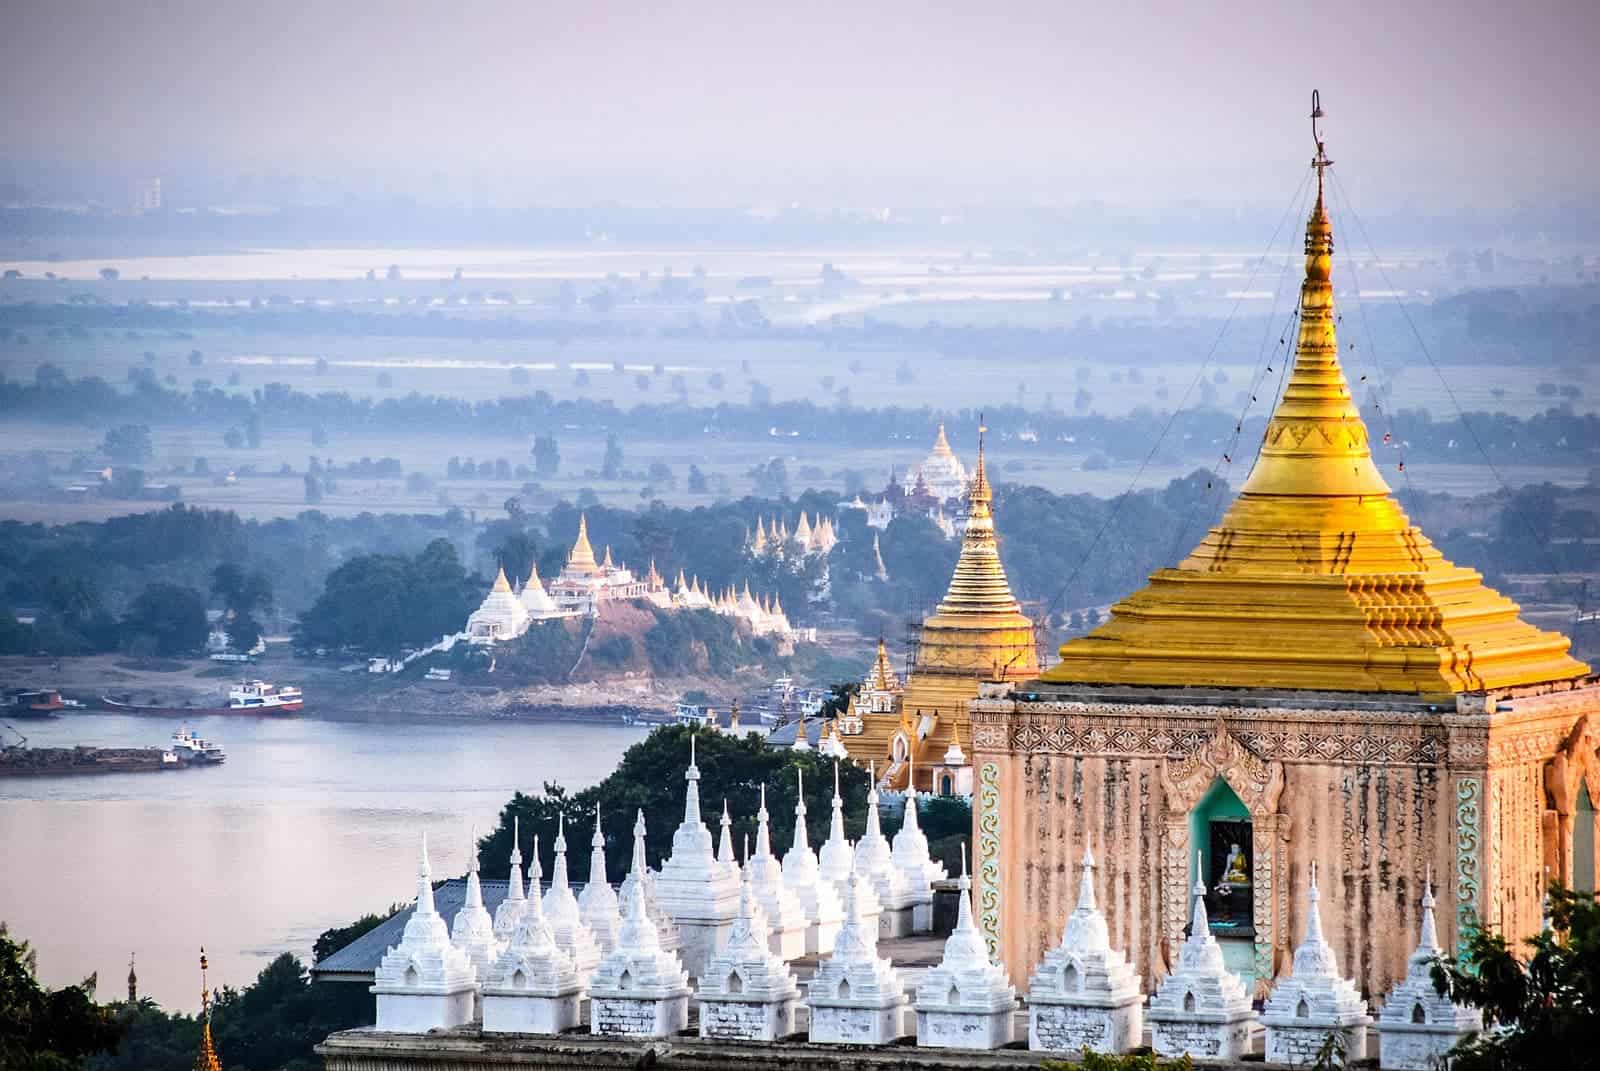 Mandalay Burma pagoda.